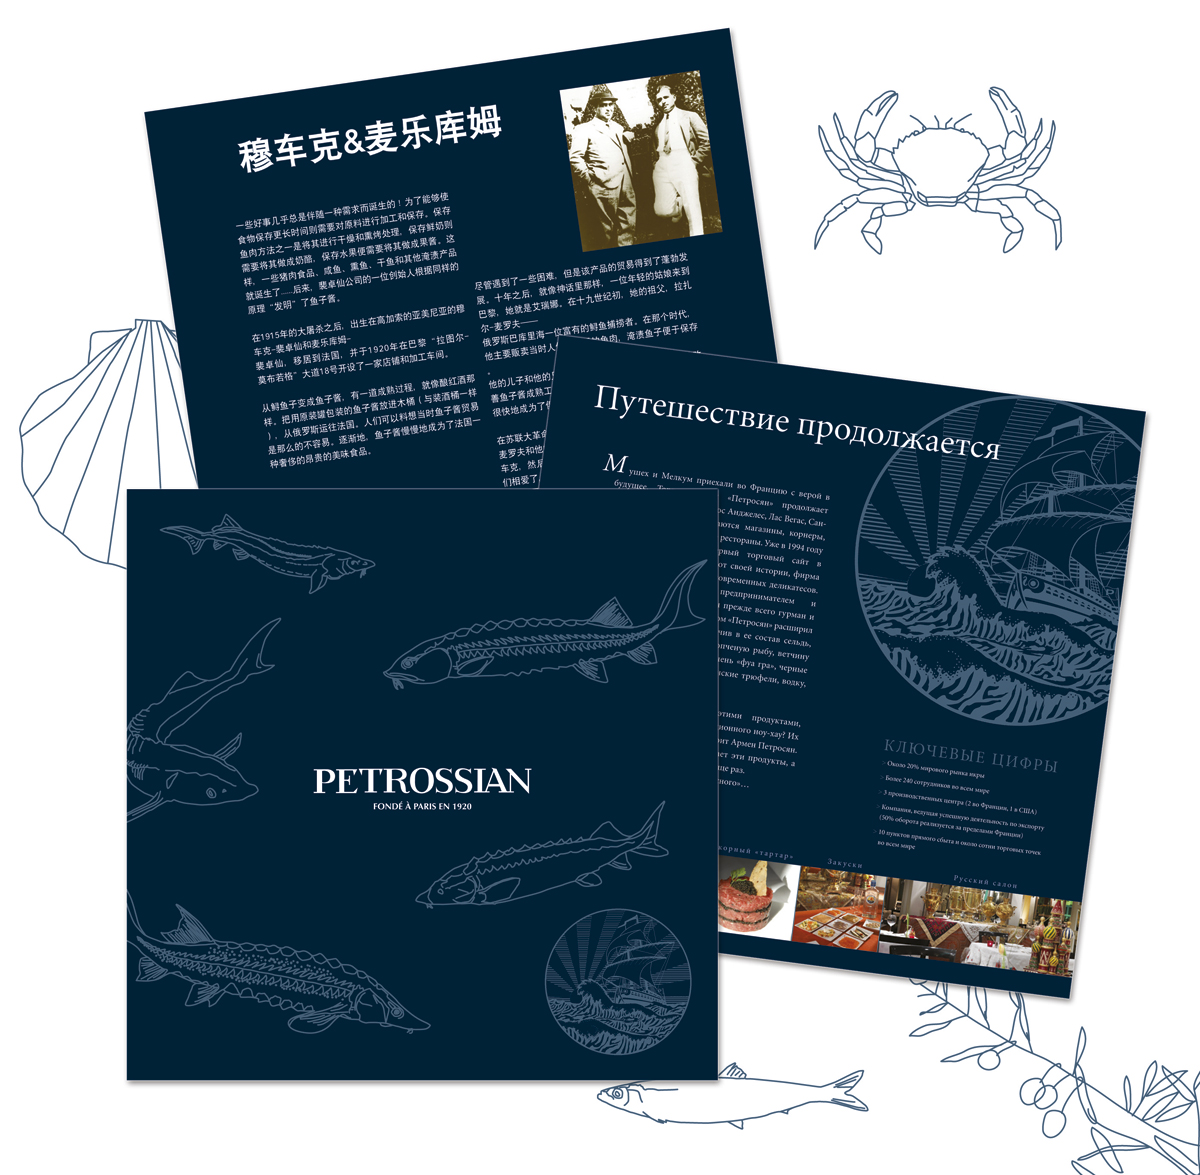 Conception graphique avec illustrations pour un dossier de presse en chinois, russe, anglais, etc. pour la marque Petrossian.